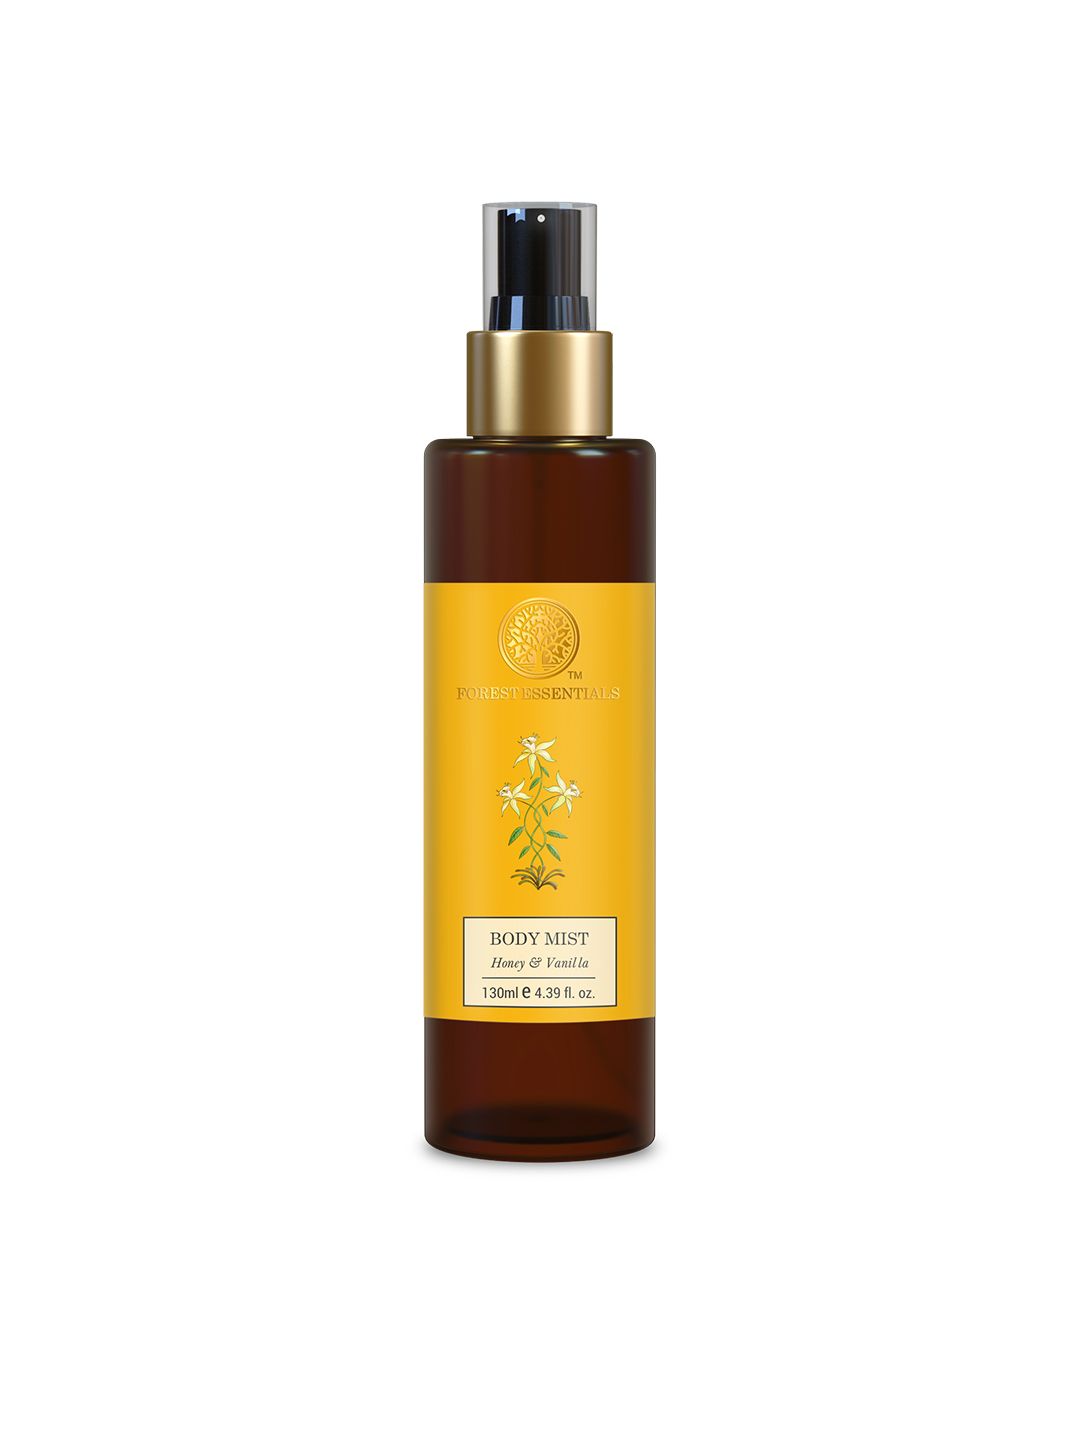 Forest Essentials Body Mist Honey & Vanilla Spray 130ml Price in India